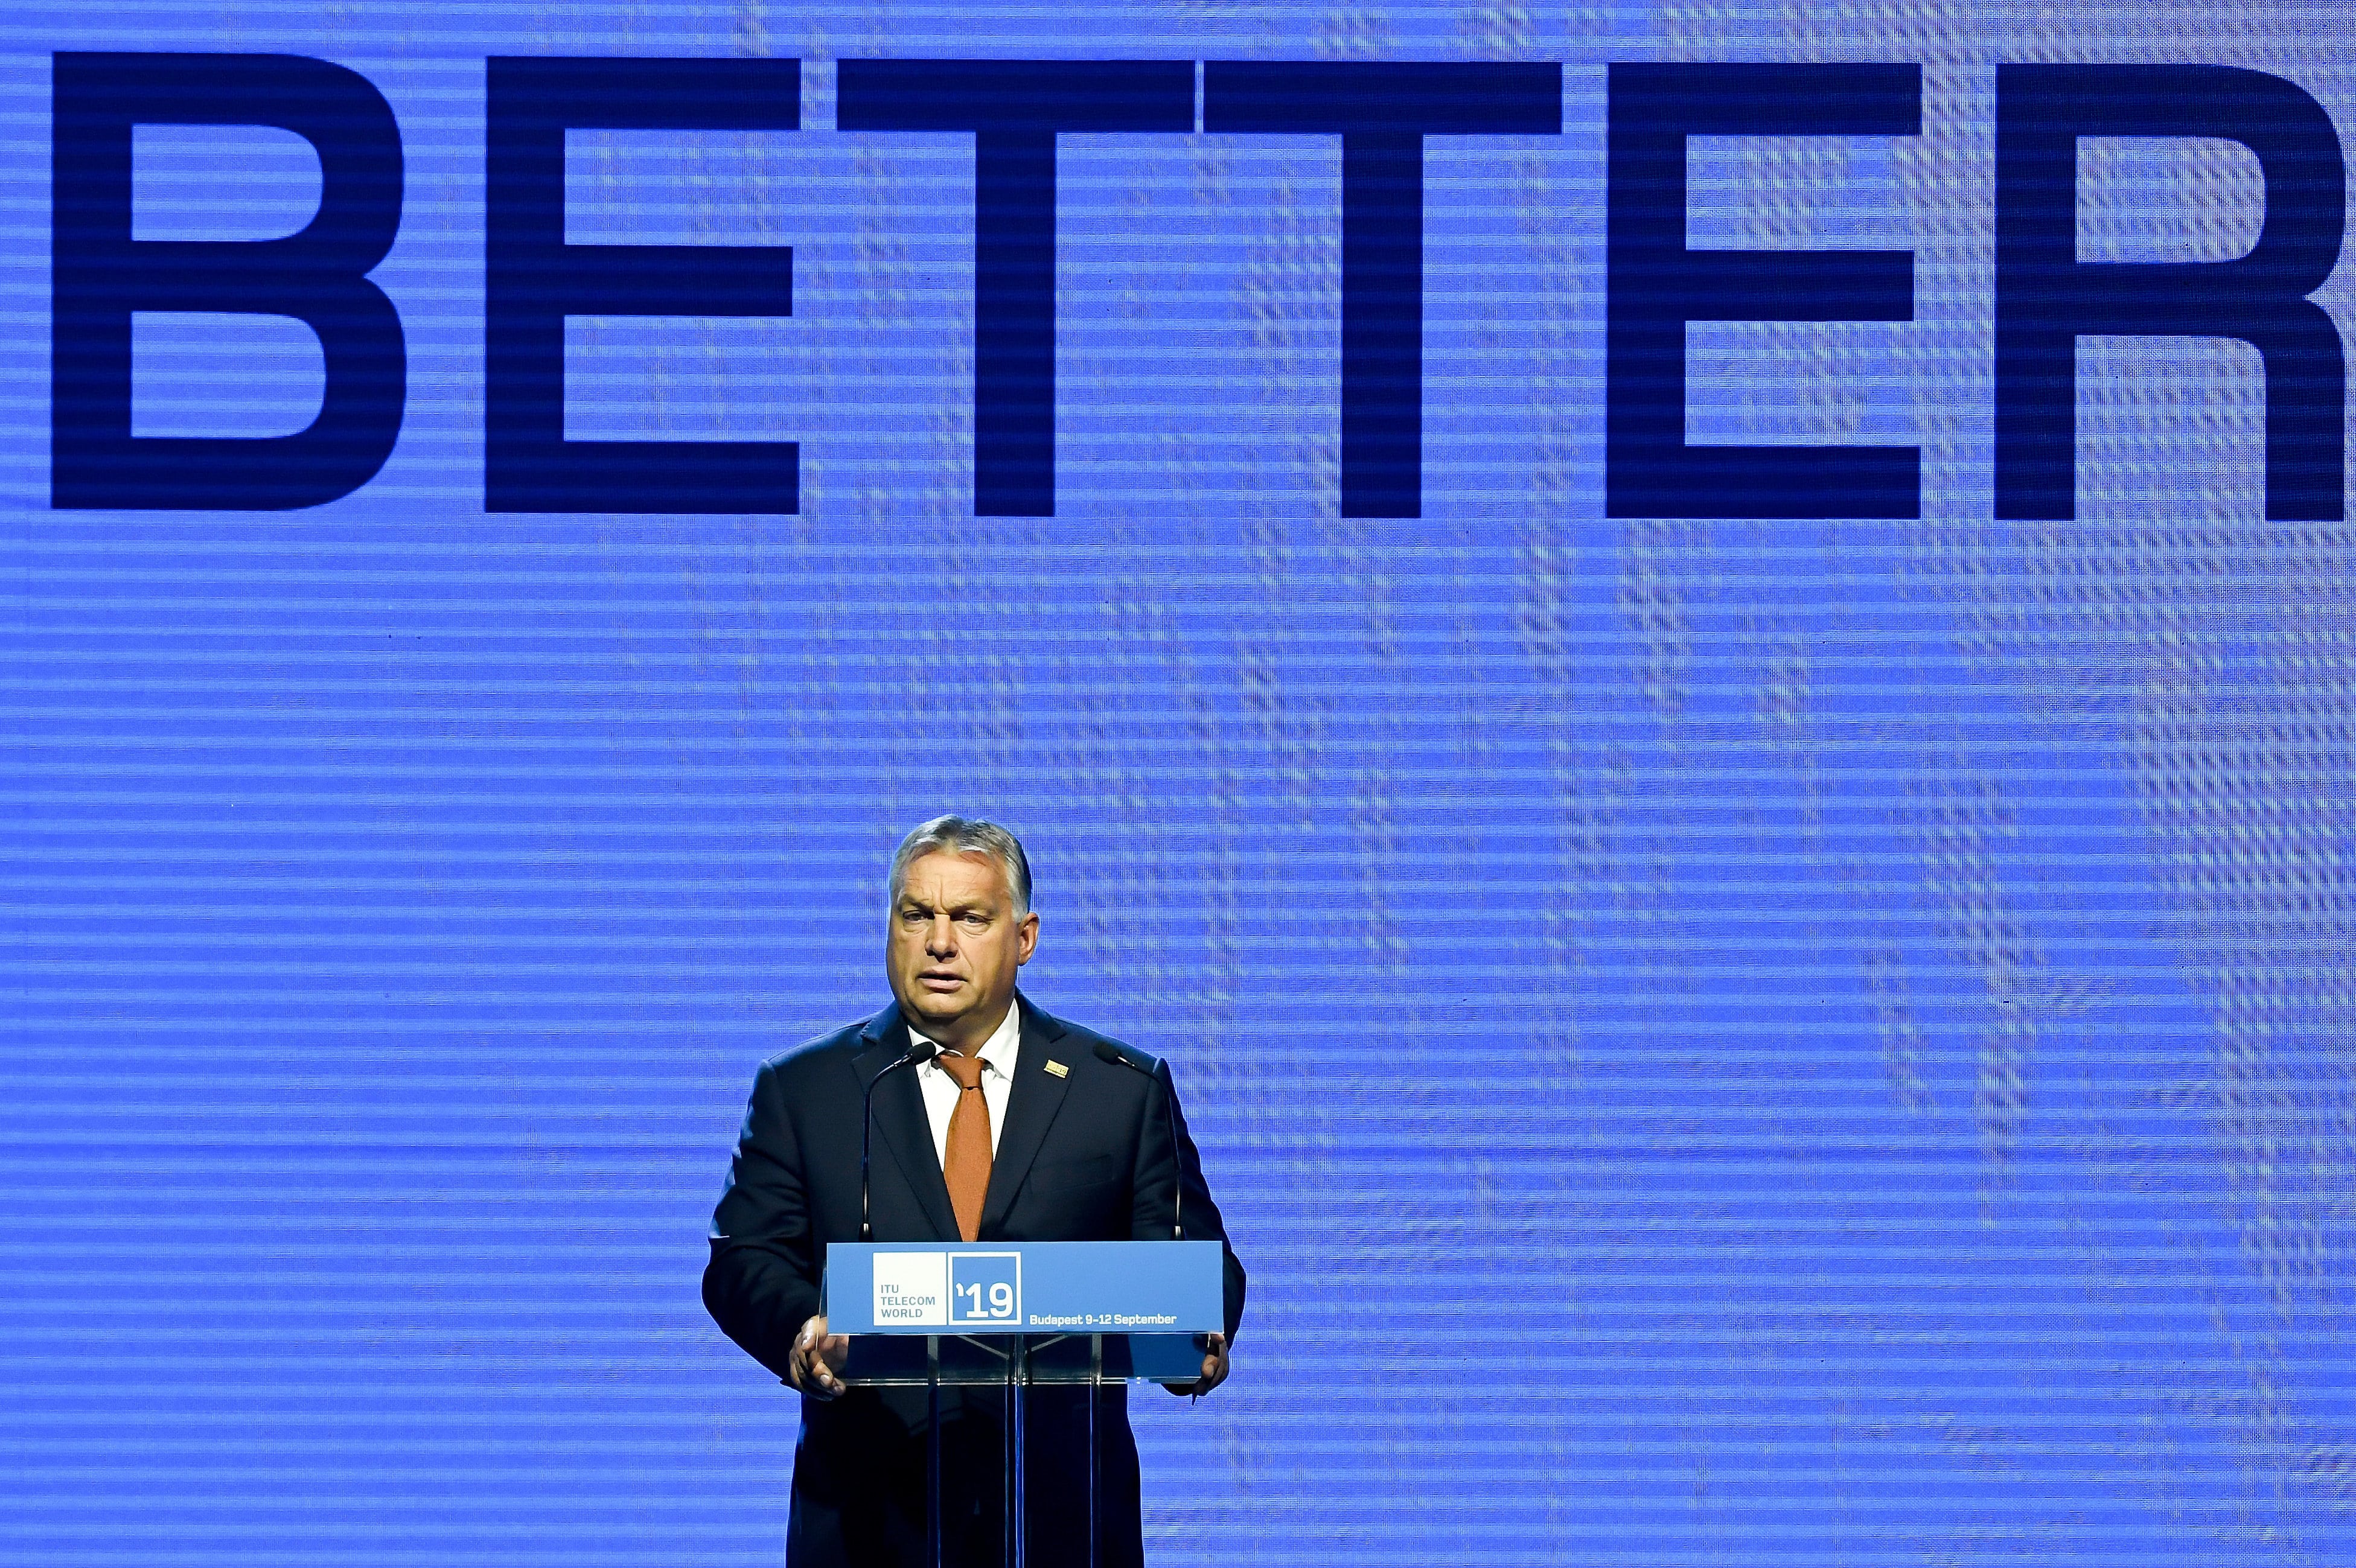 PM Orbán inaugura la conferencia ITU Telecom World en Budapest